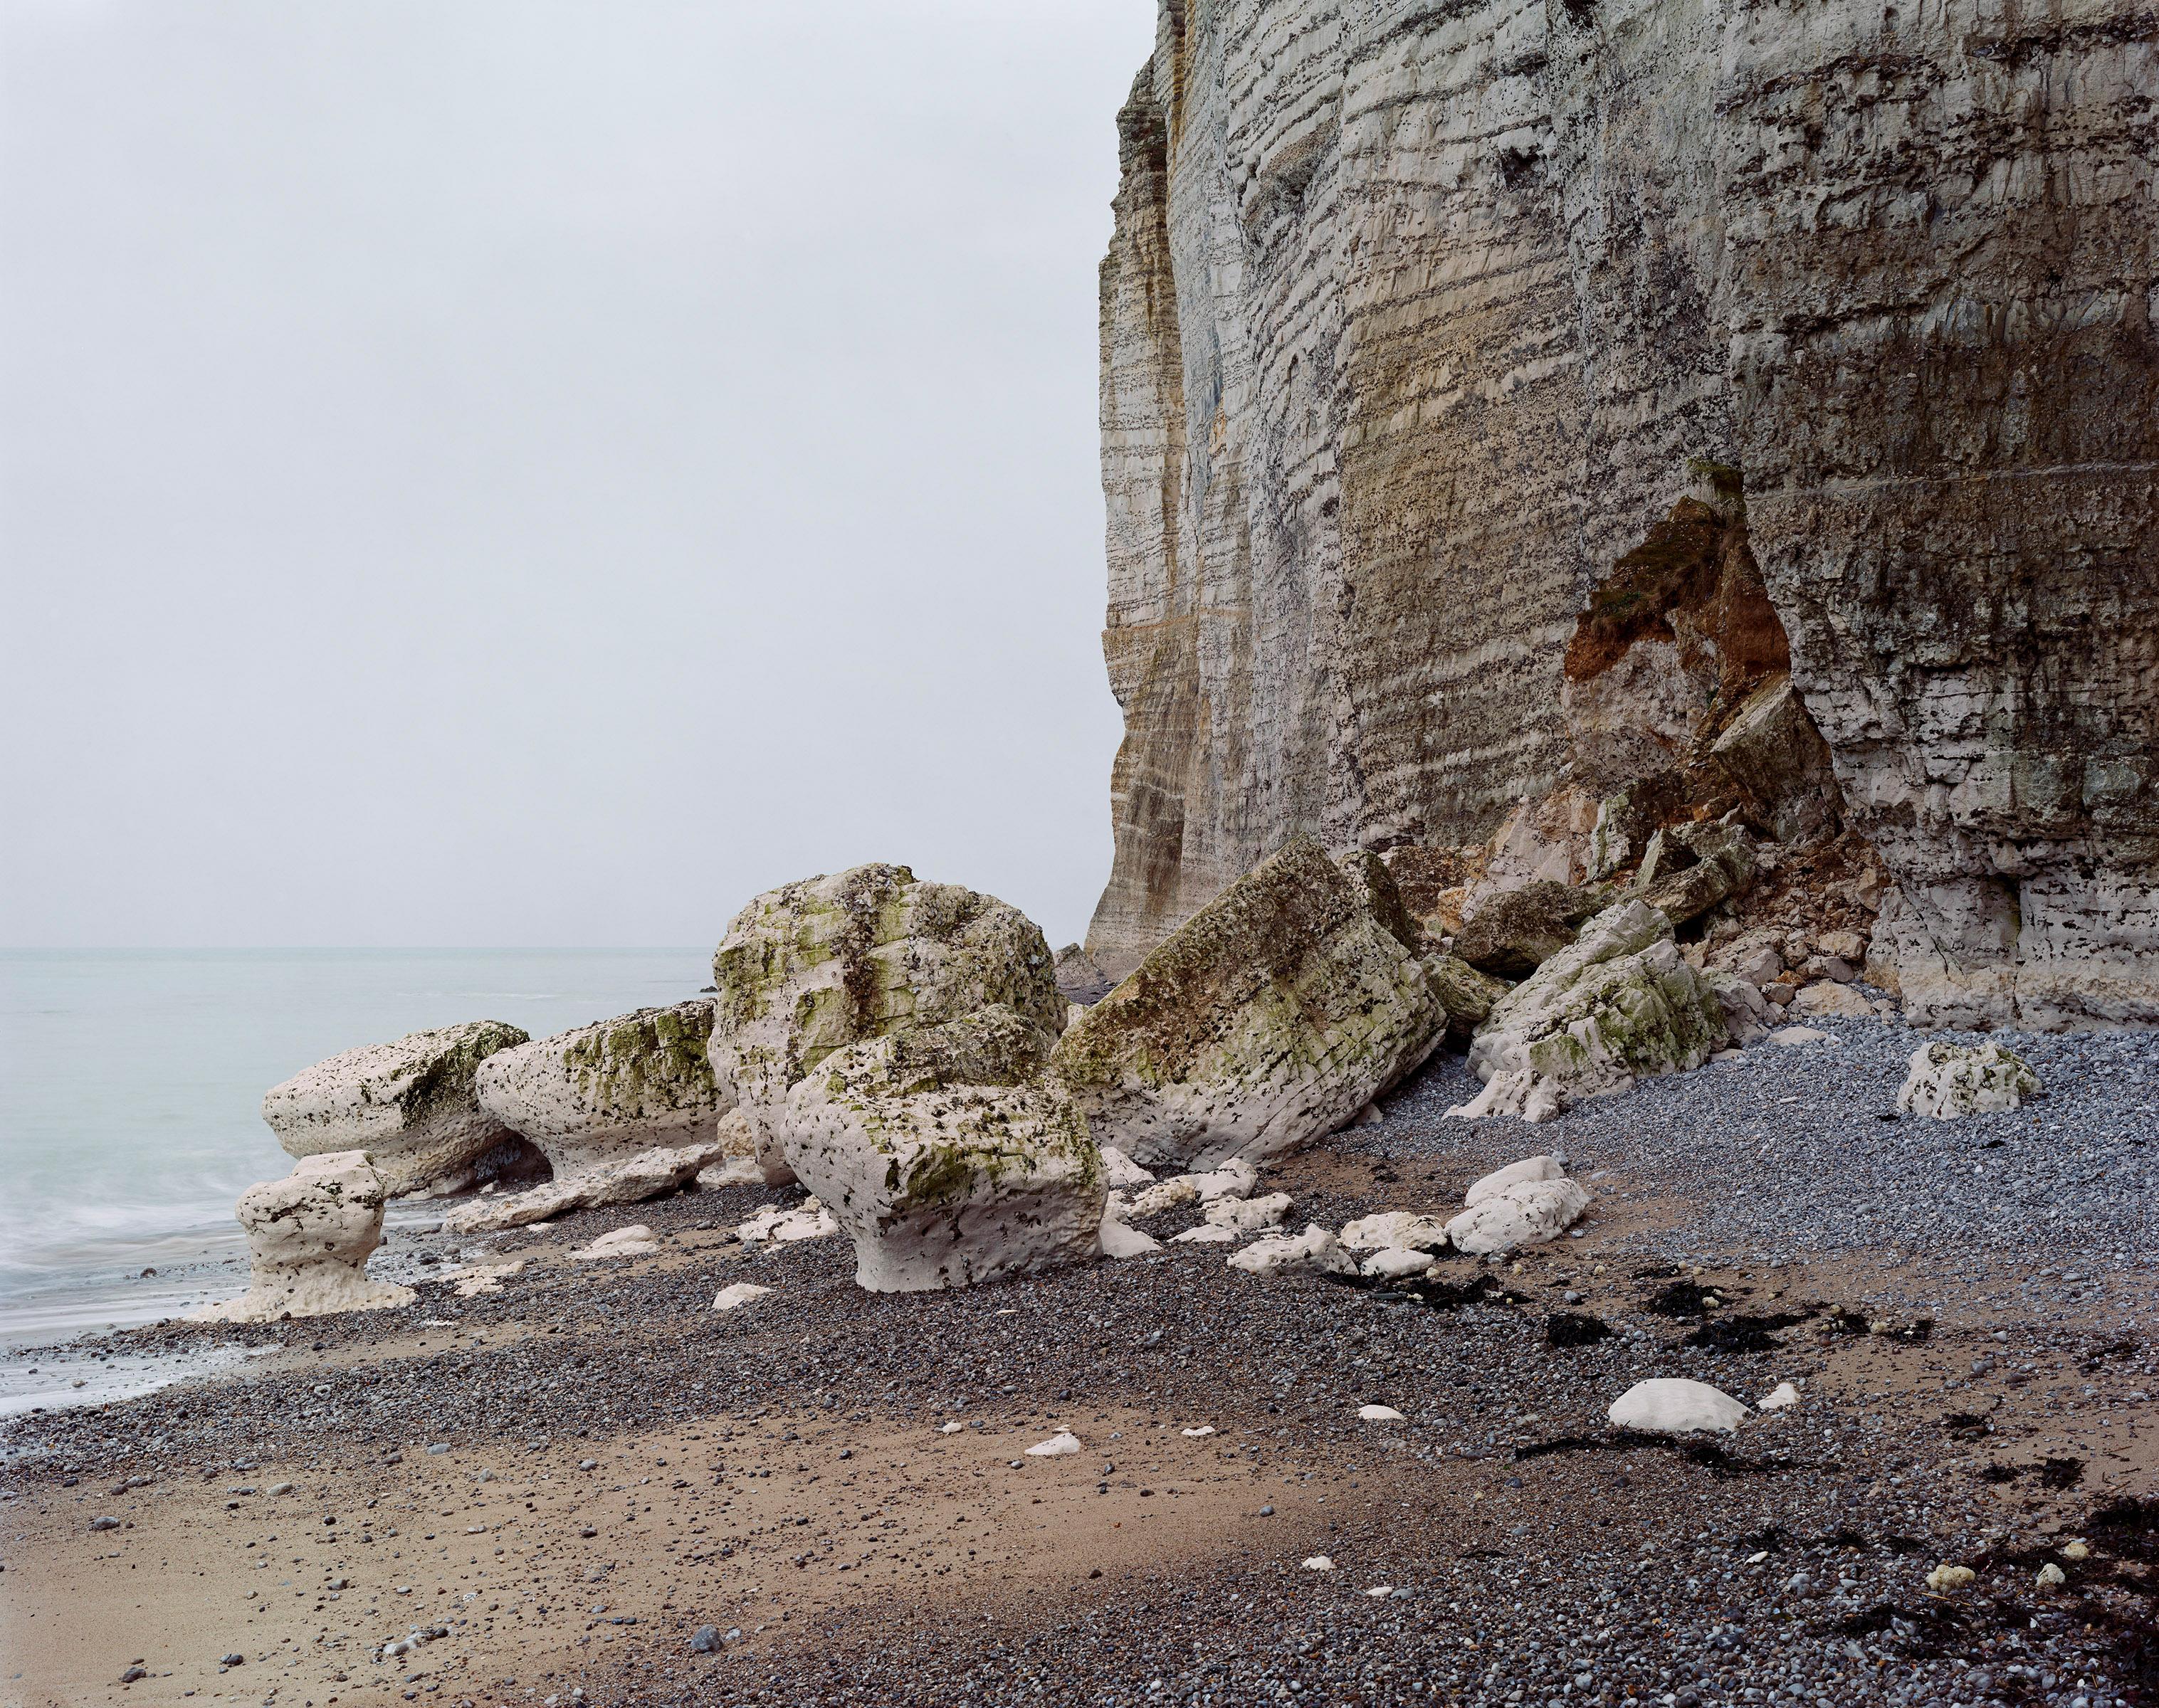 Signiert, datiert und nummeriert auf der Rückseite
Tintenstrahldruck
46 1/2 x 55 1/2 Zoll / 118 x 141 cm
Ausgabe von 6 + 2 APs

Jem Southam (geb. 1950) ist einer der meistbeachteten britischen Landschaftsfotografen der Gegenwart. Southam, der für